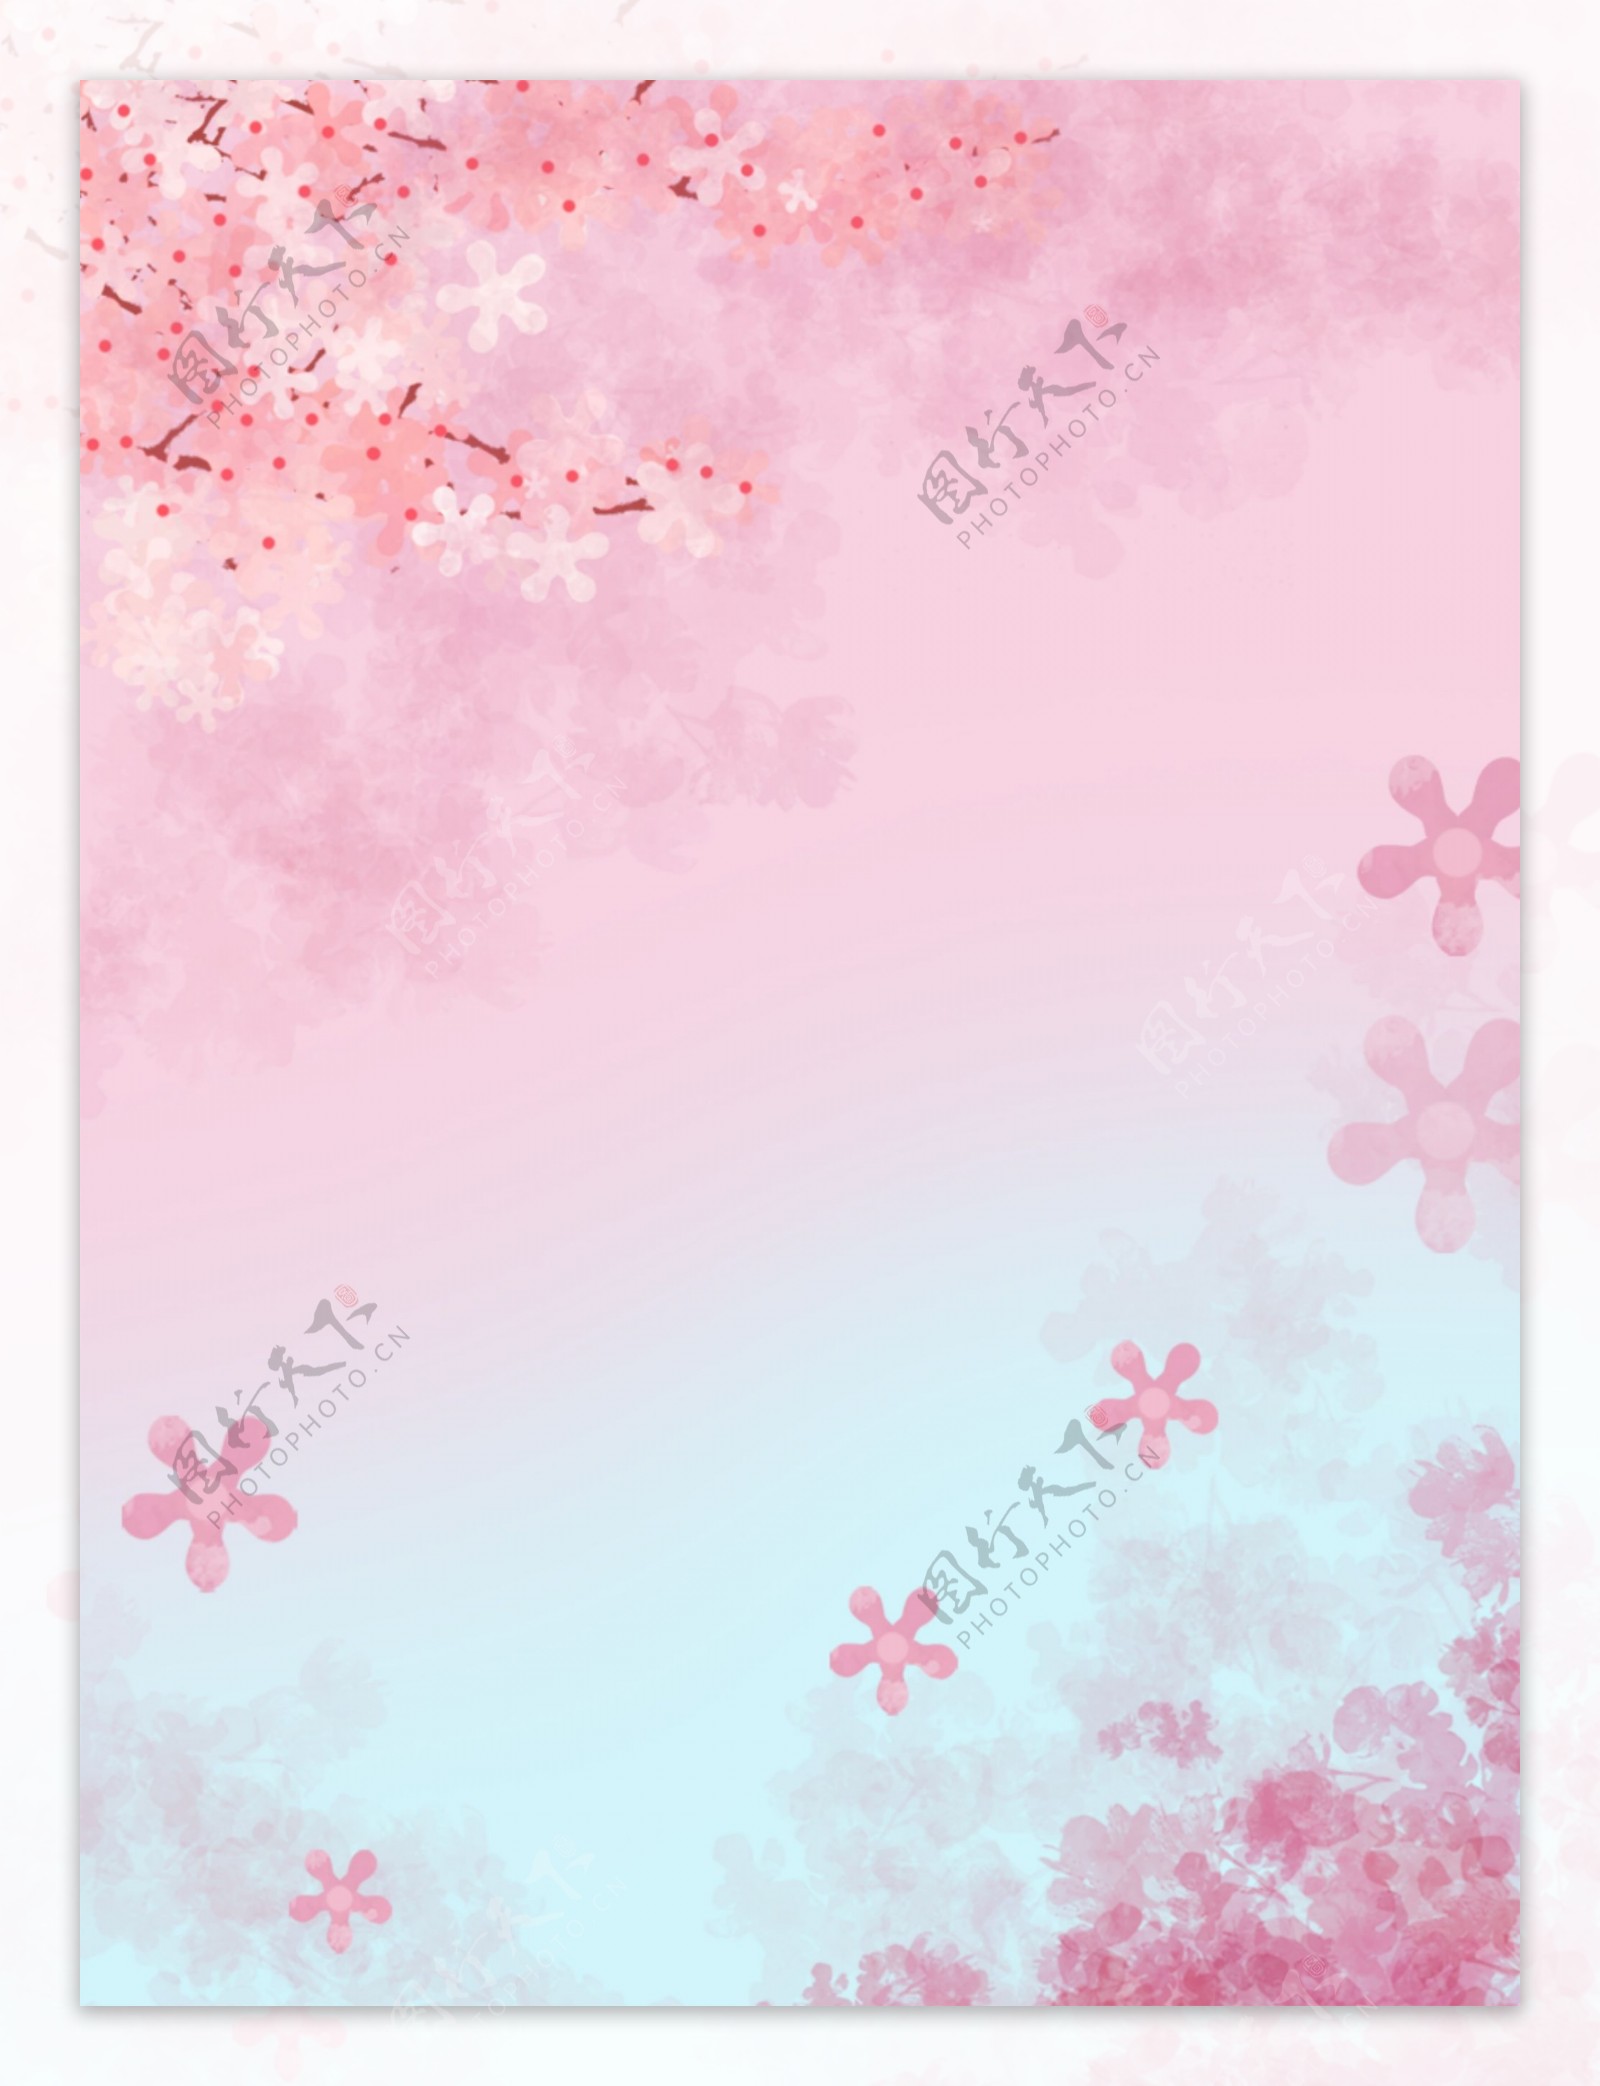 粉色樱花背景图片